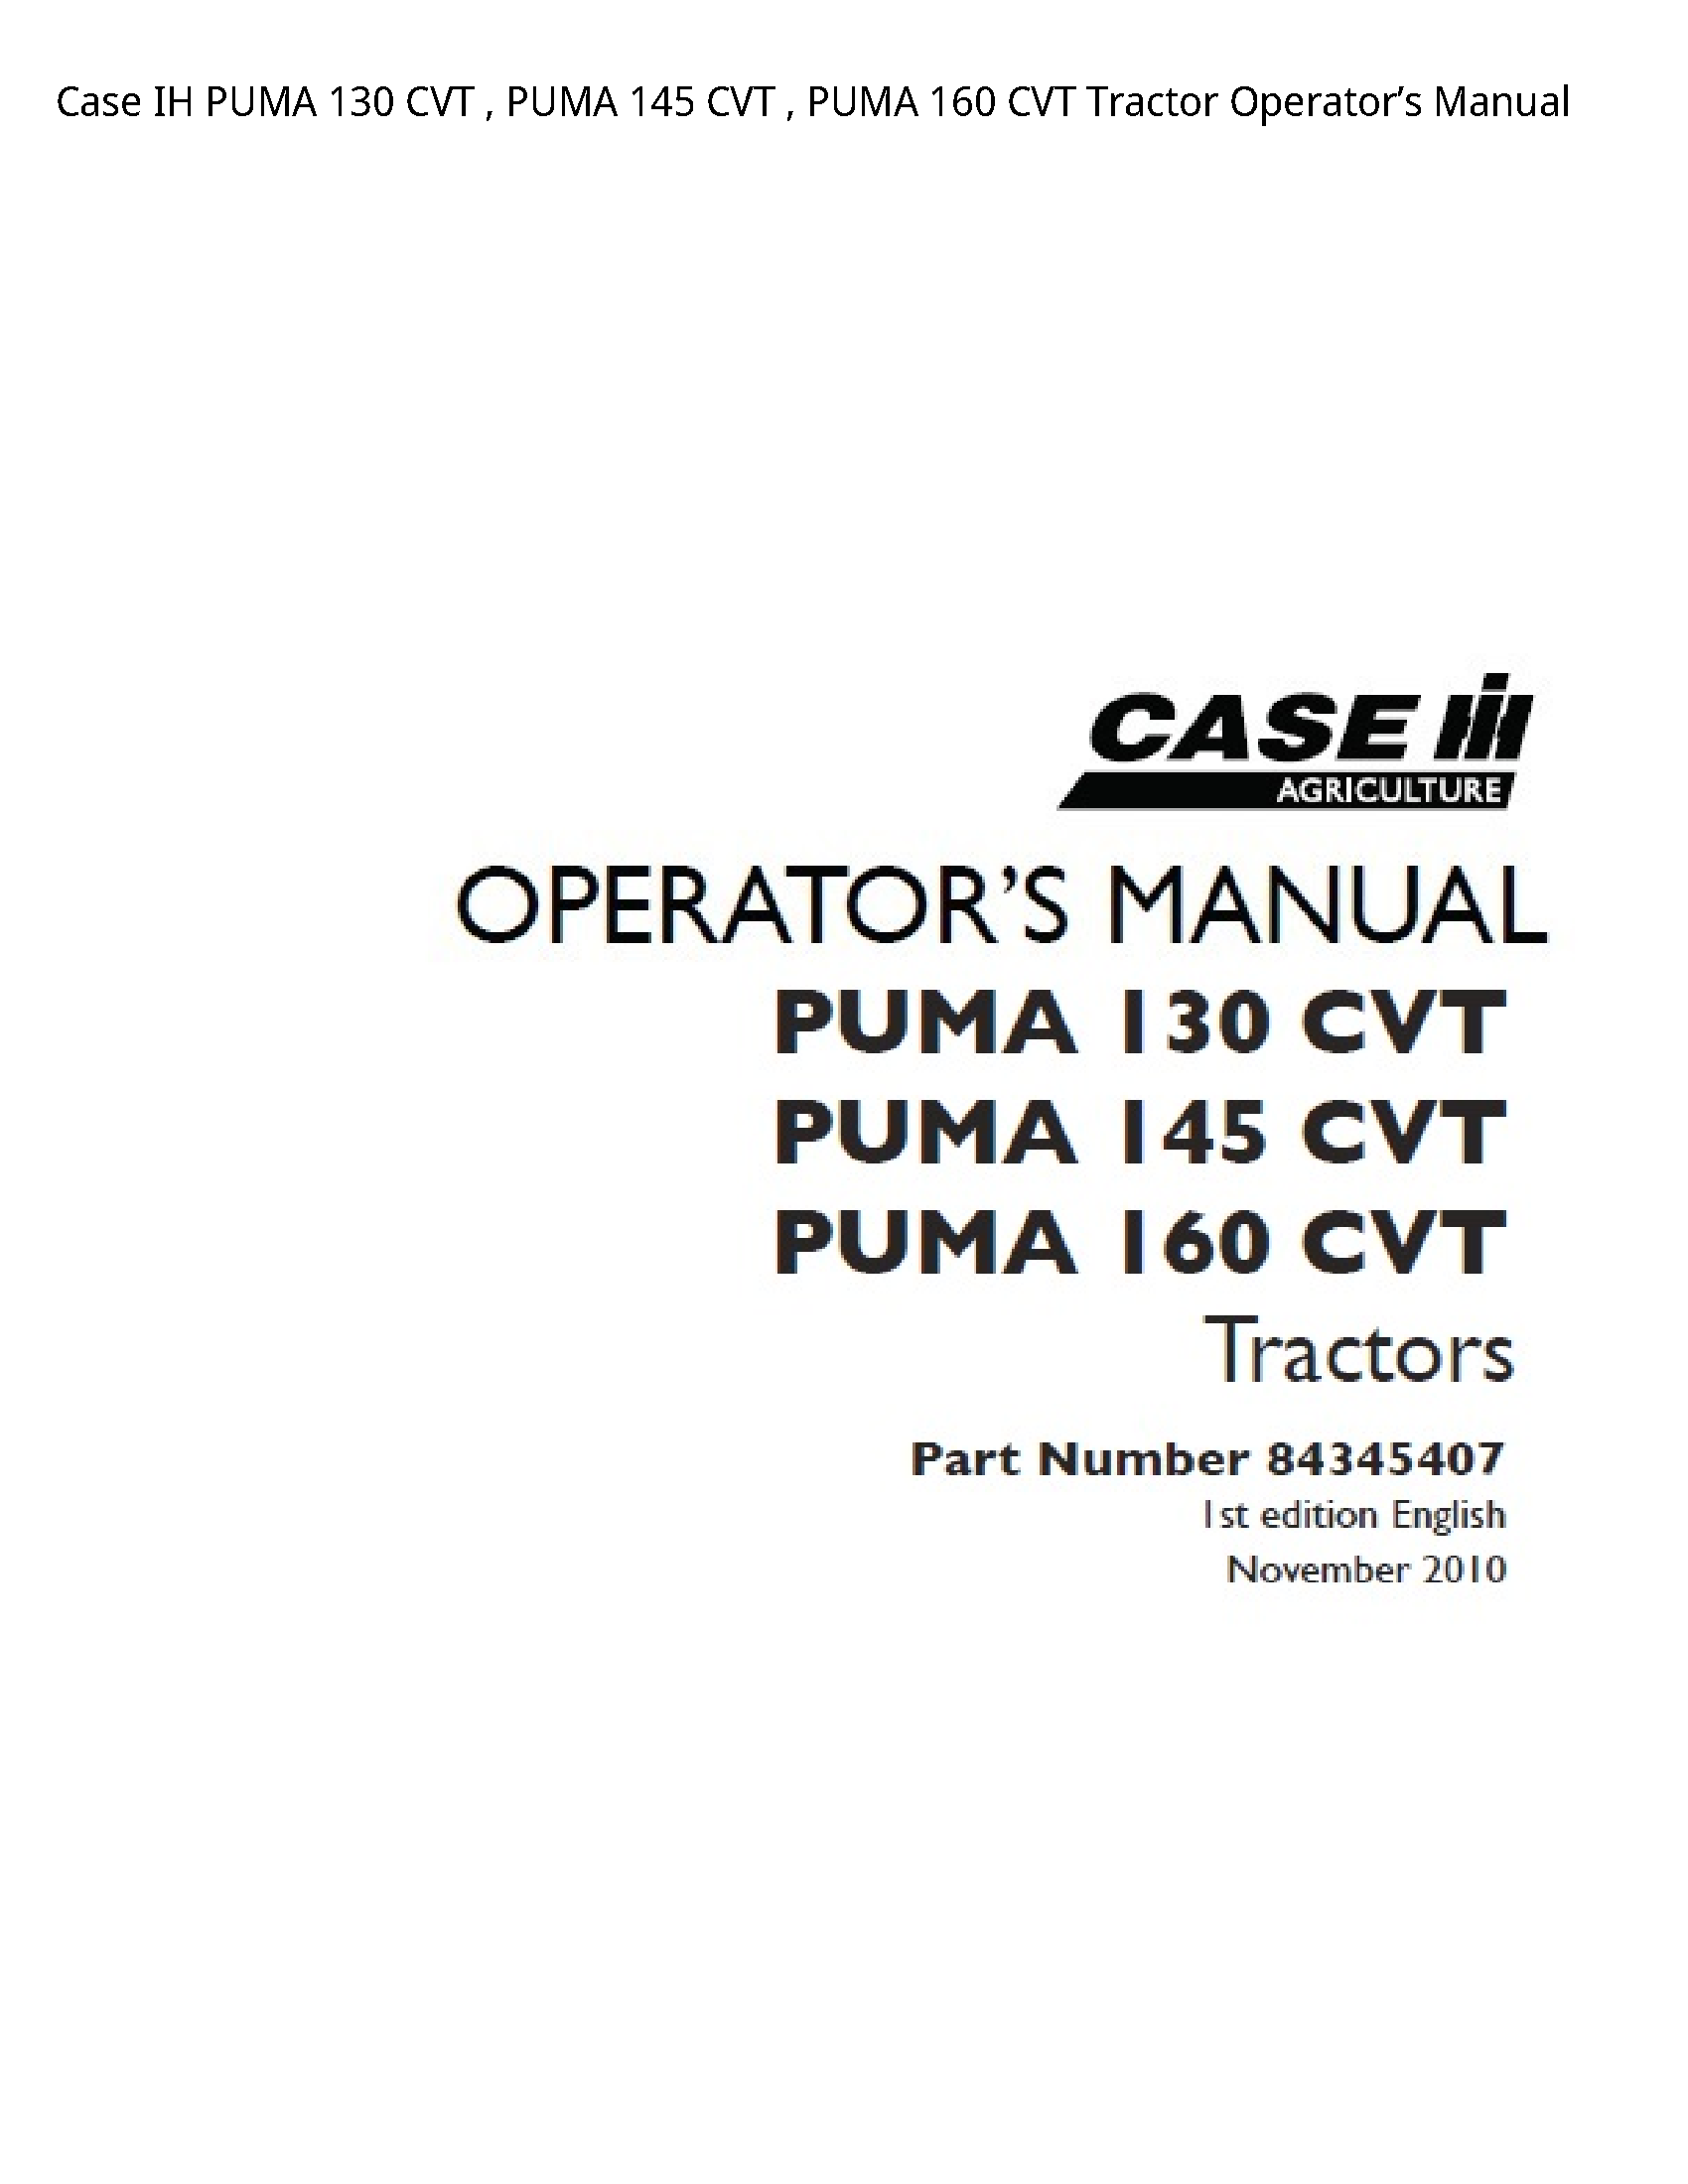 Case/Case IH 130 IH PUMA CVT PUMA CVT PUMA CVT Tractor Operator’s manual